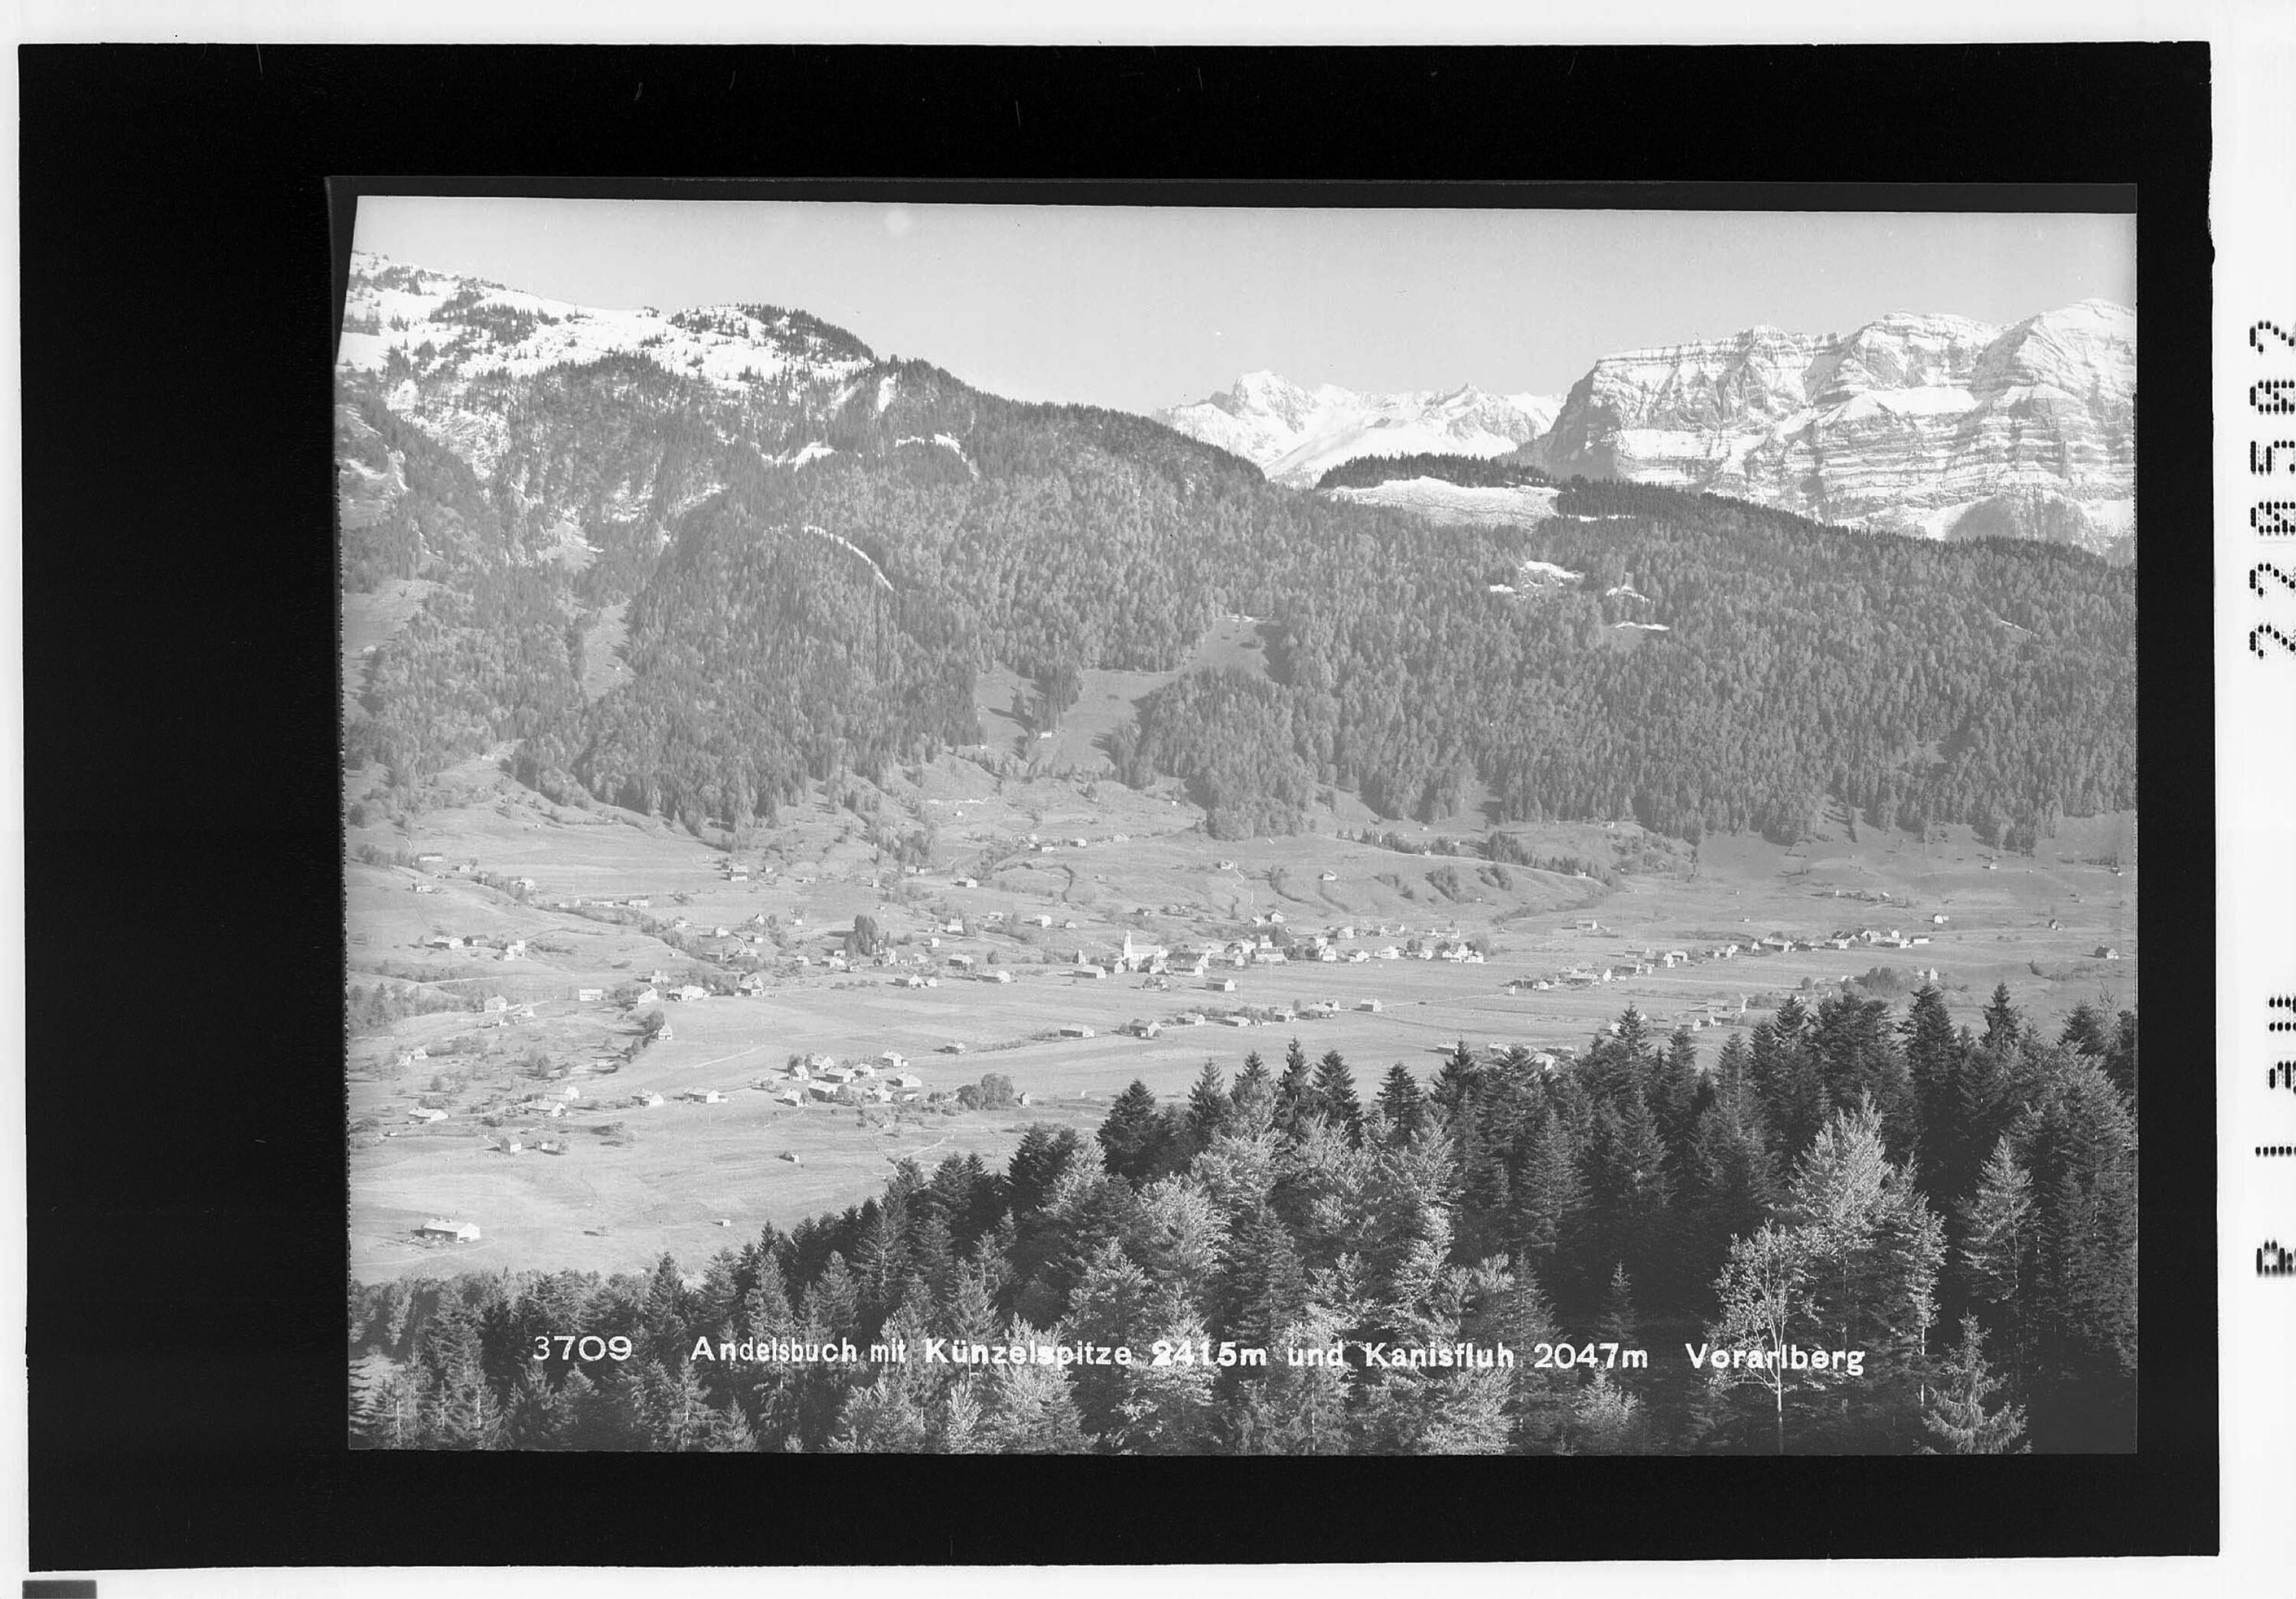 Andelsbuch mit Künzelspitze 2415 m und Kanisfluh 2047 m></div>


    <hr>
    <div class=